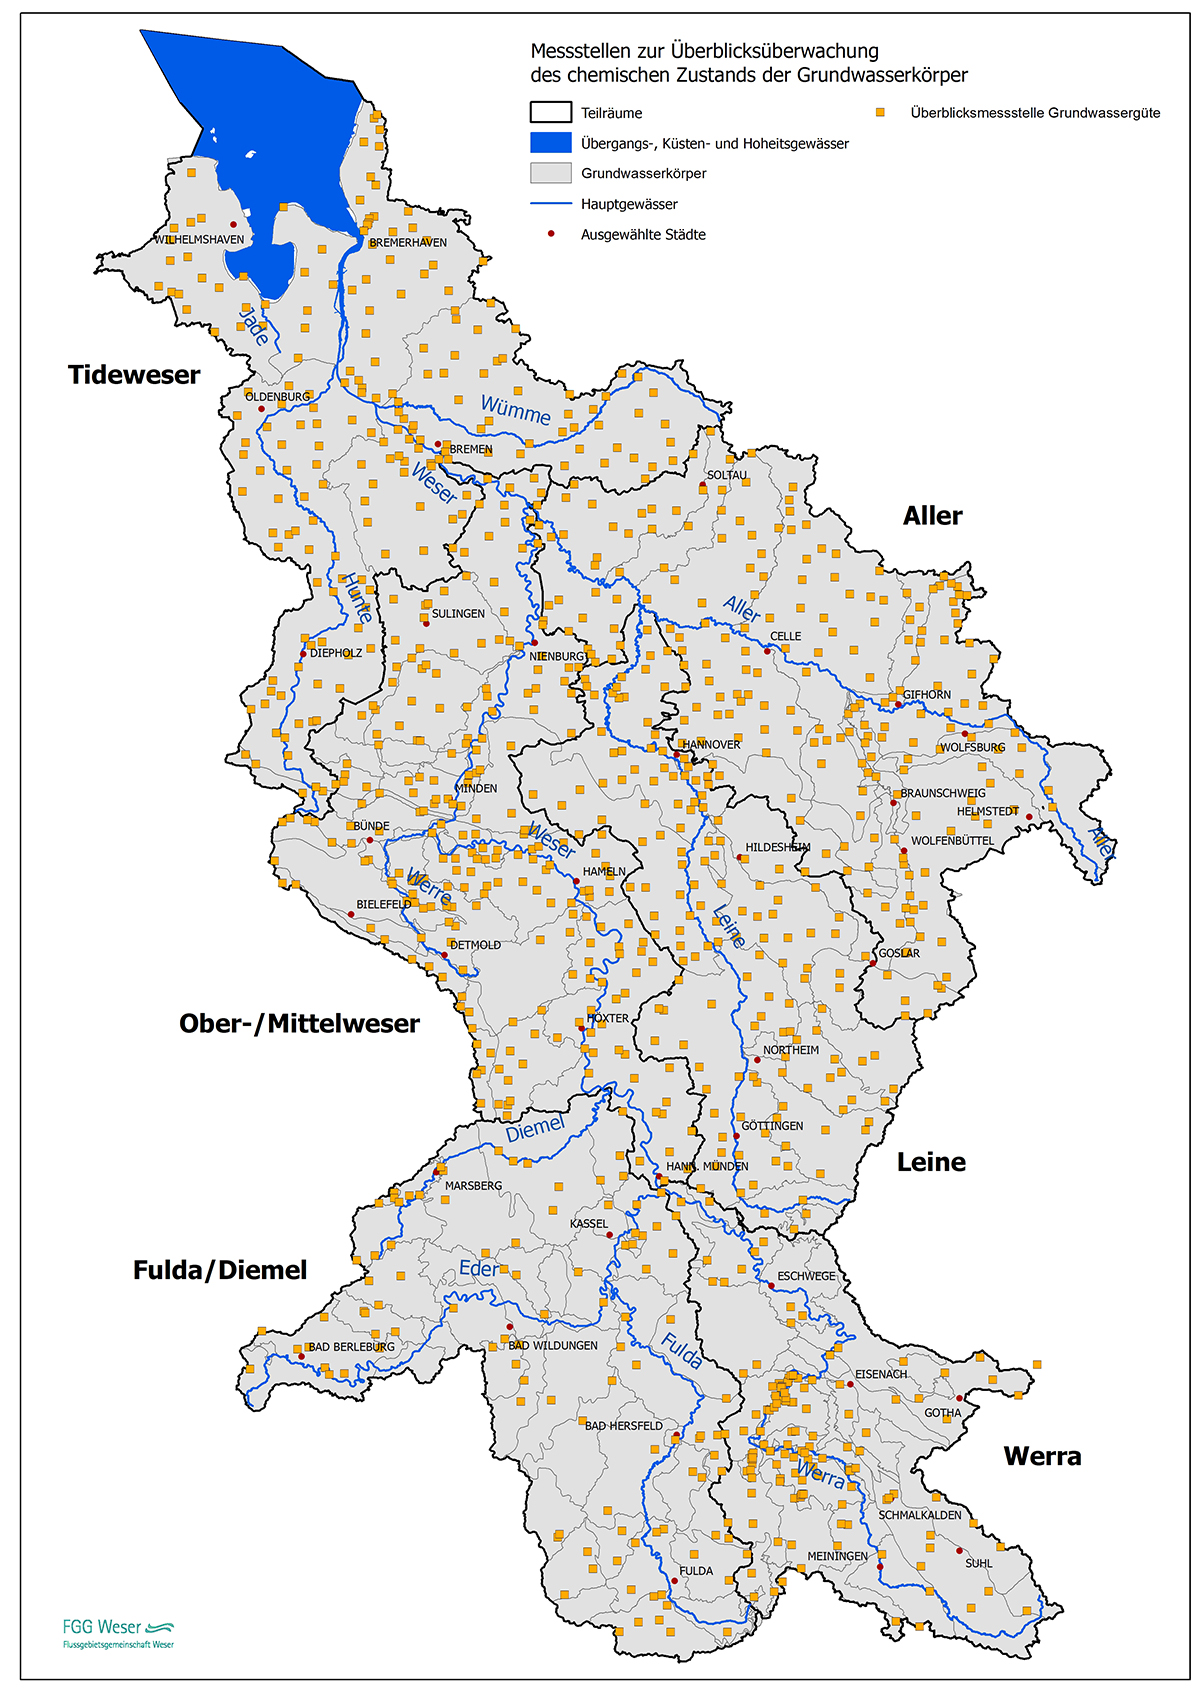 Überblicksmessnetz für das Grundwassermonitoring (FGG Weser, 2021)